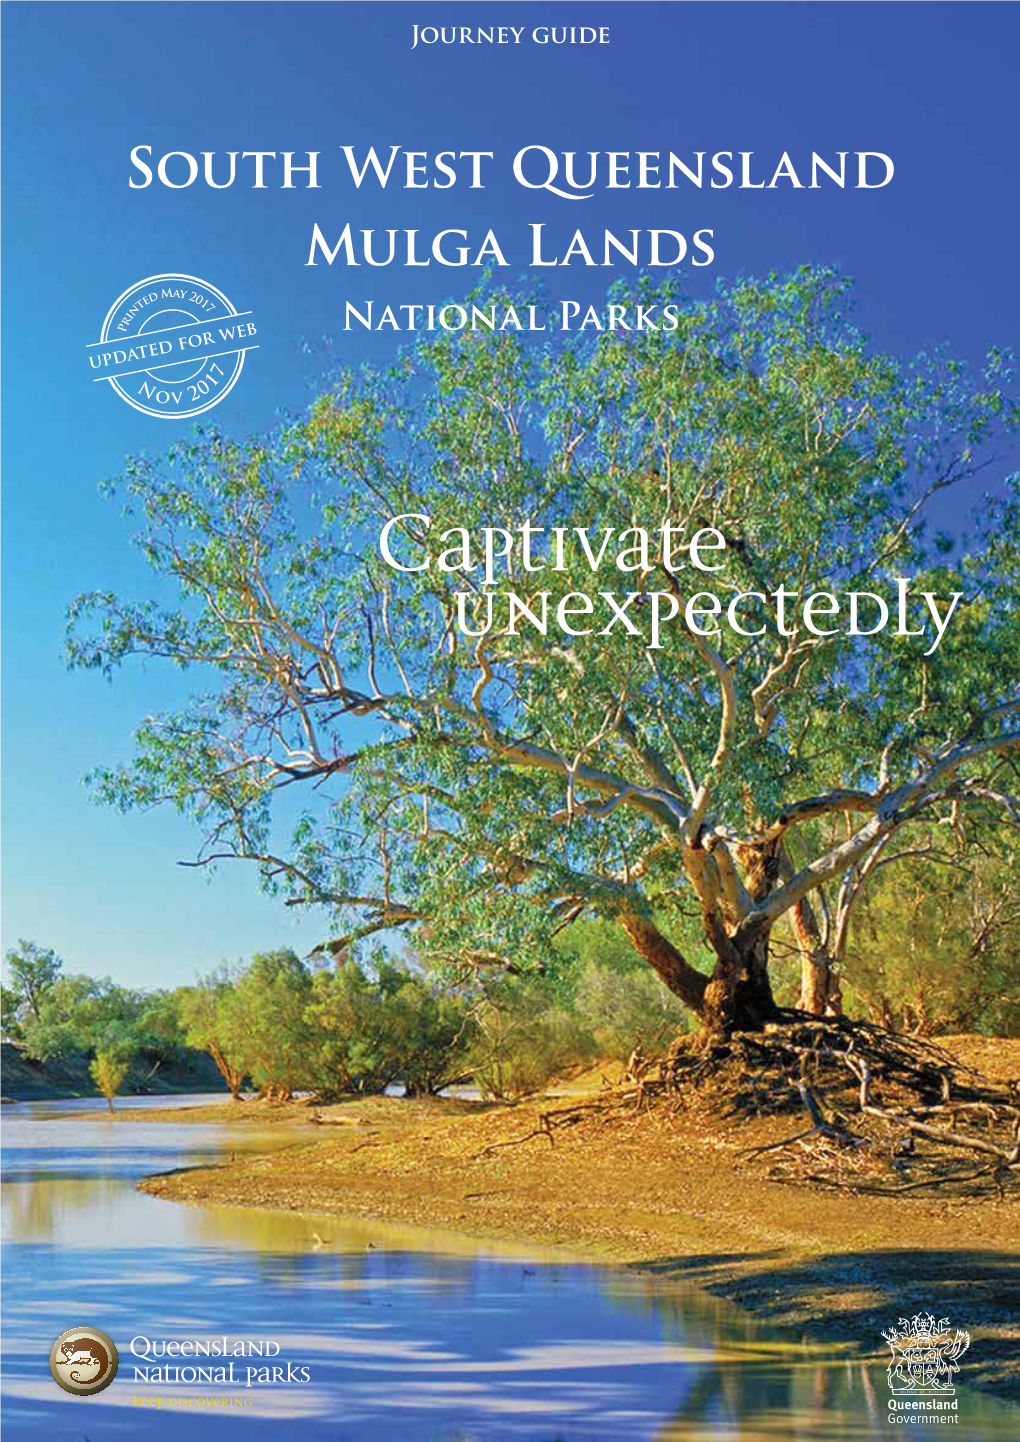 South West Queensland Mulga Lands National Parks Journey Guide